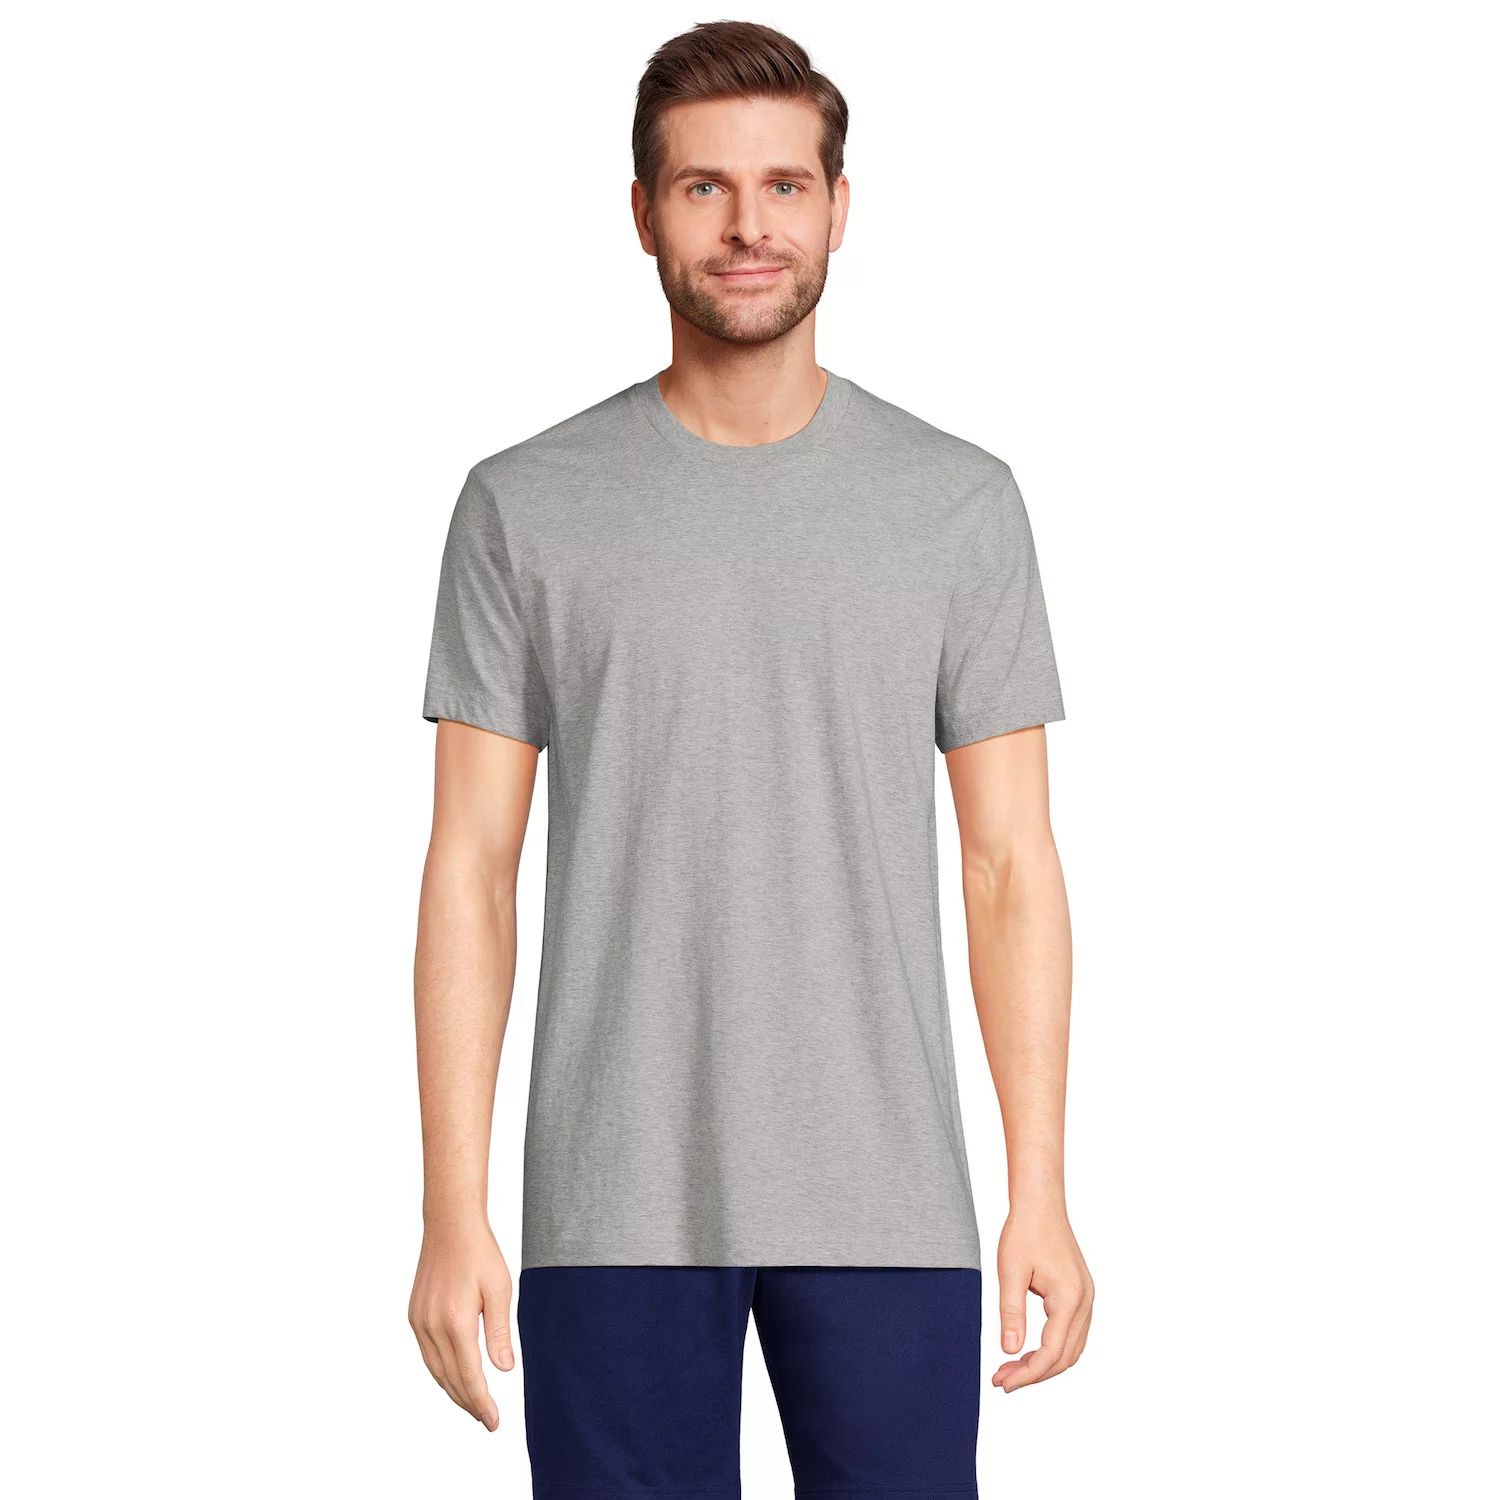 Комплект из трех футболок-майок Big & Tall с вырезом с надписью Lands' End, белый